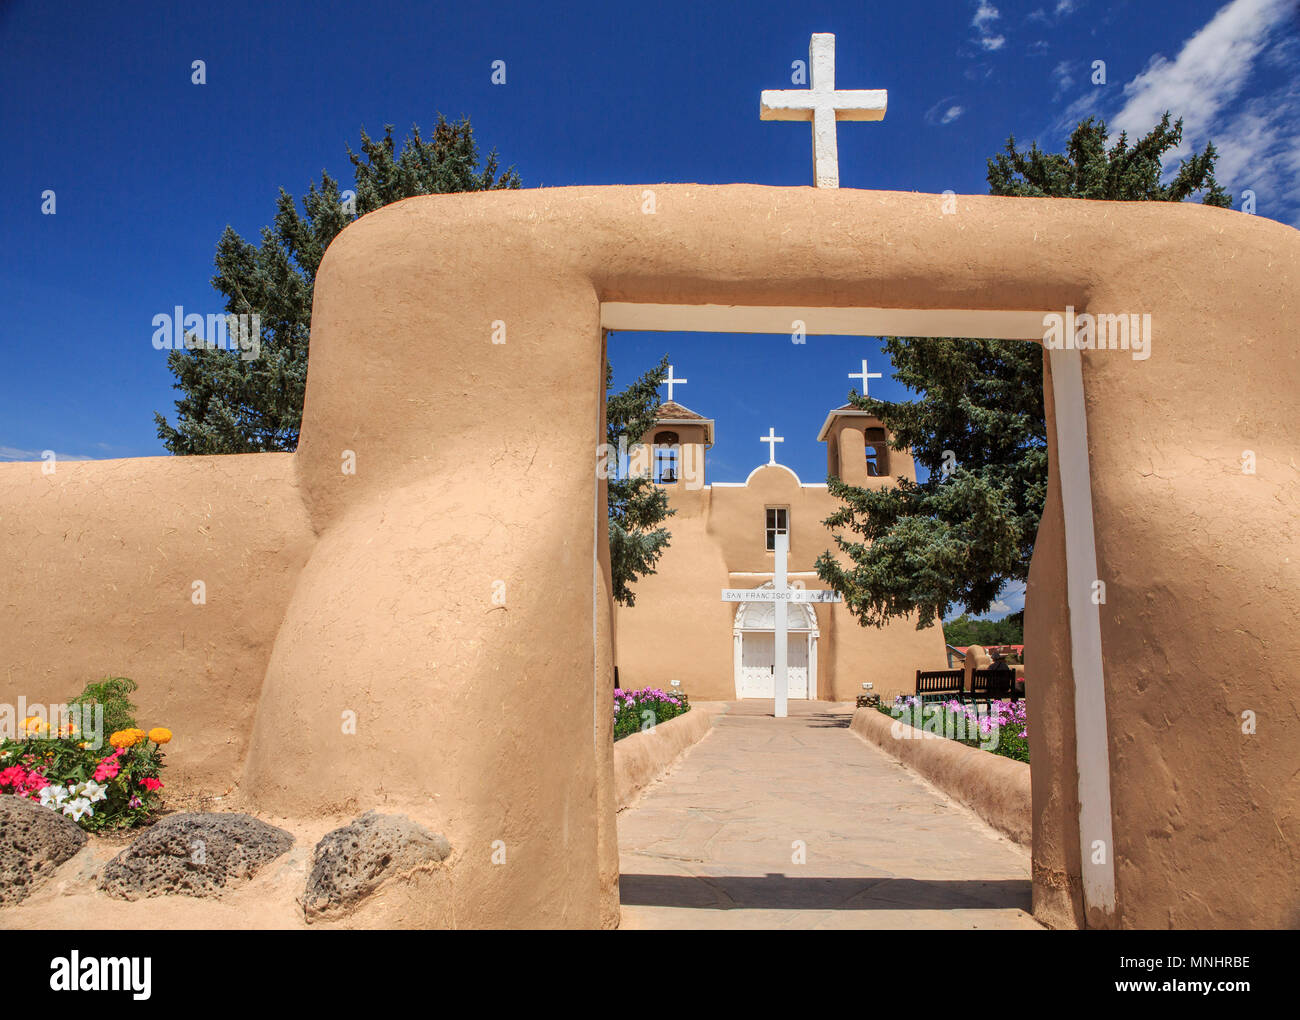 Il San Francisco de Asis chiesa della missione di Taos, Nuovo Messico è una delle più celebri strutture nel sud-ovest ed è stato nominato un sito del Patrimonio Culturale Mondiale dell UNESCO e un U.S. Monumento Storico Nazionale. Foto Stock